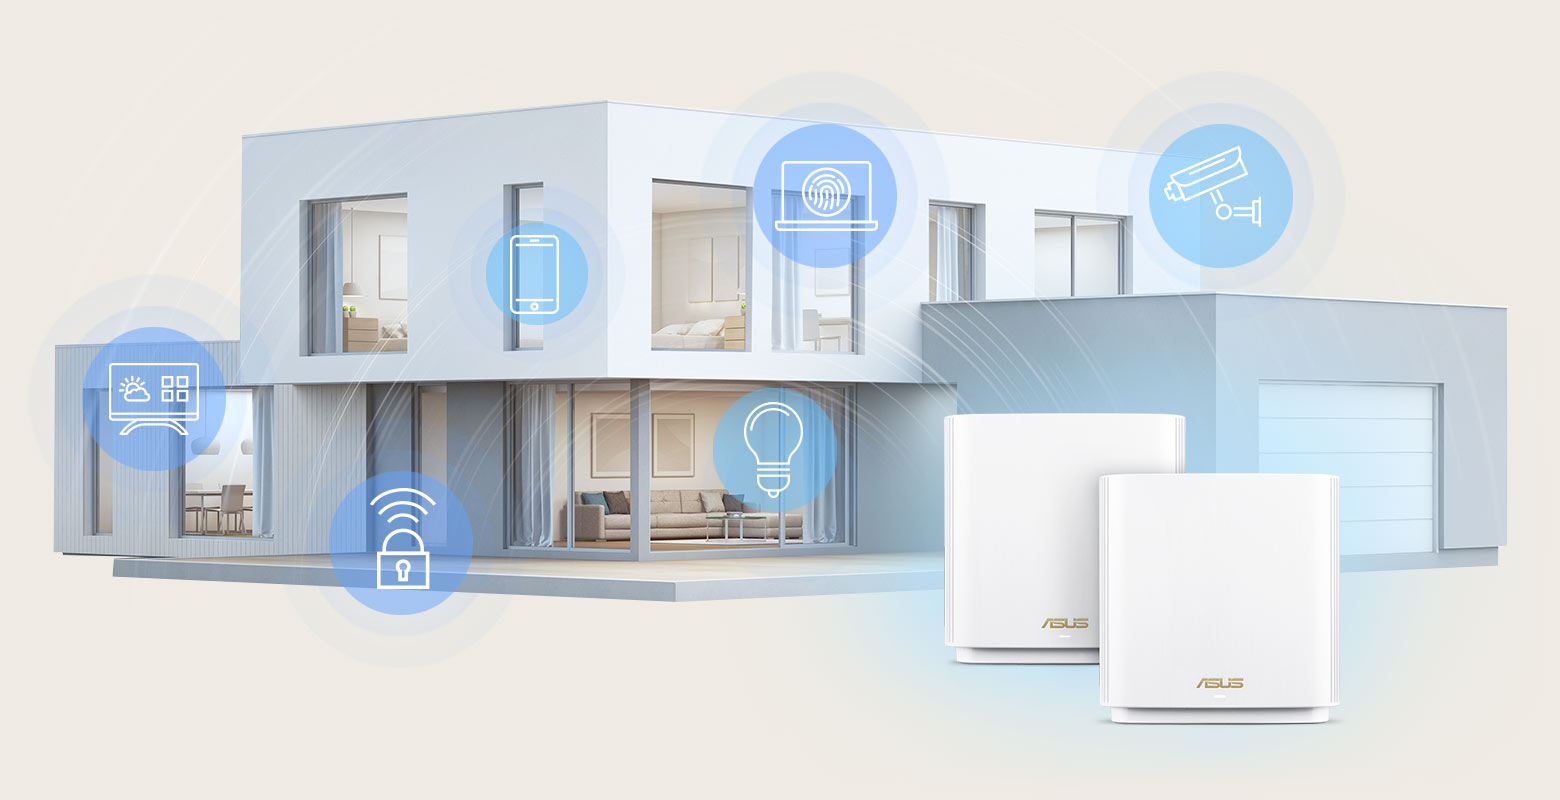 נתבי רשת ASUS ZenWiFi XT9 מציעים כיסוי WiFi ברחבי הבית של עד 530 מטר מרובע כדי שתוכל לחבר את כל הגאדג'טים של ה-IoT הביתיים שלך.